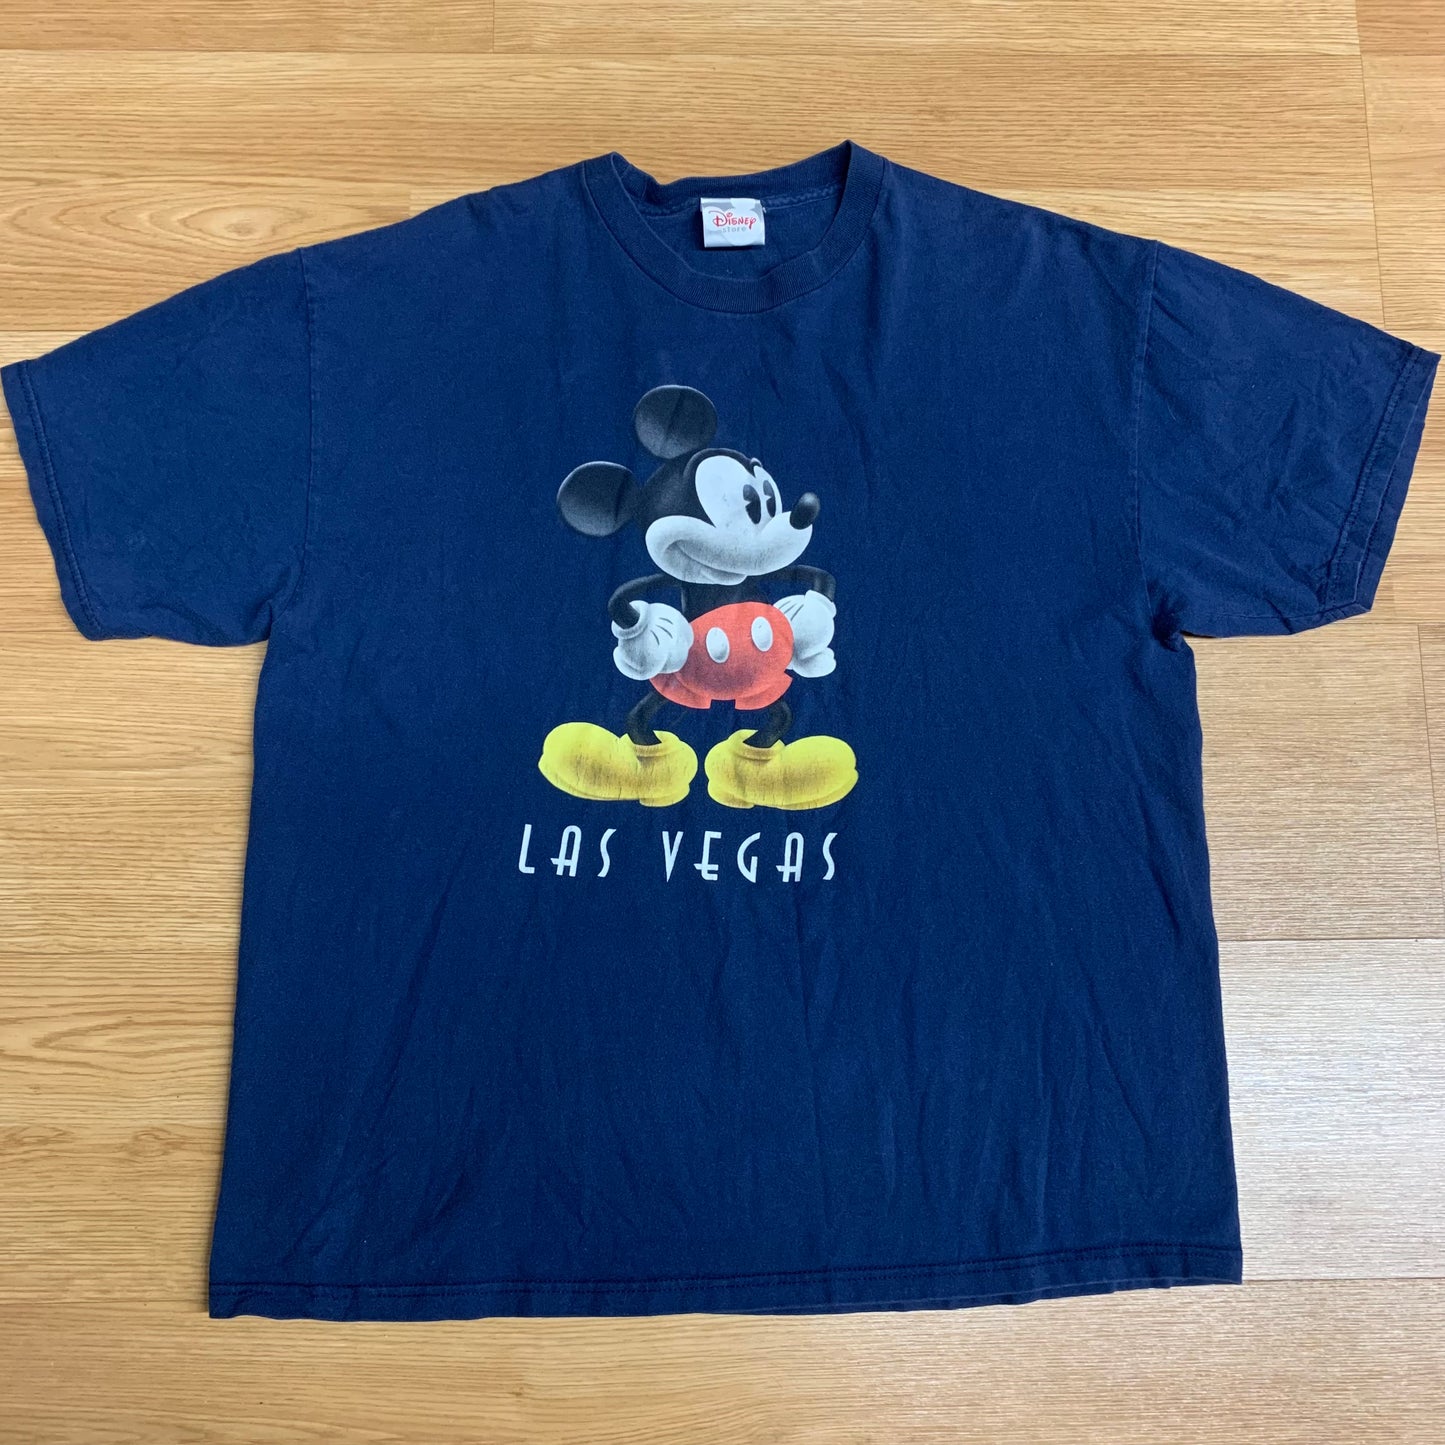 Disney Store Las Vegas XL